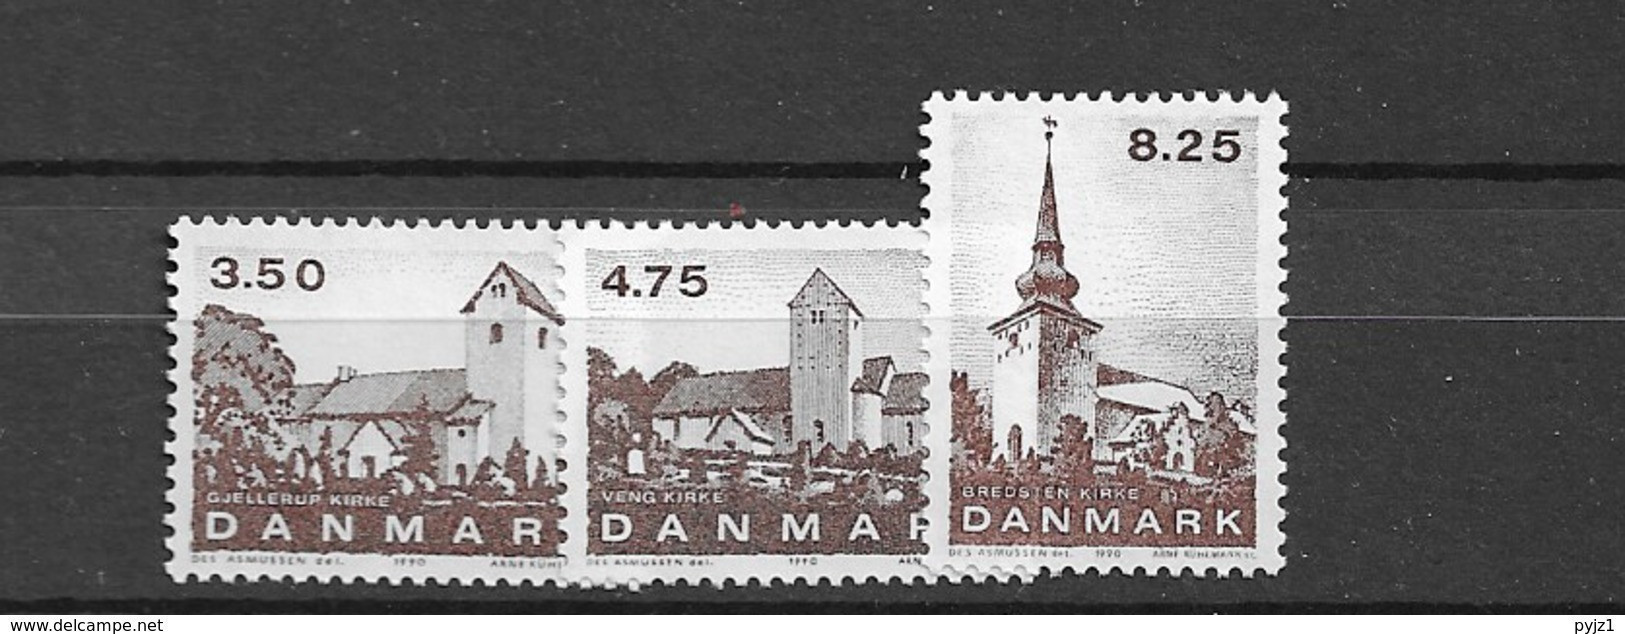 1990 MNH Danmark, Michel 986-8 Postfris** - Ongebruikt